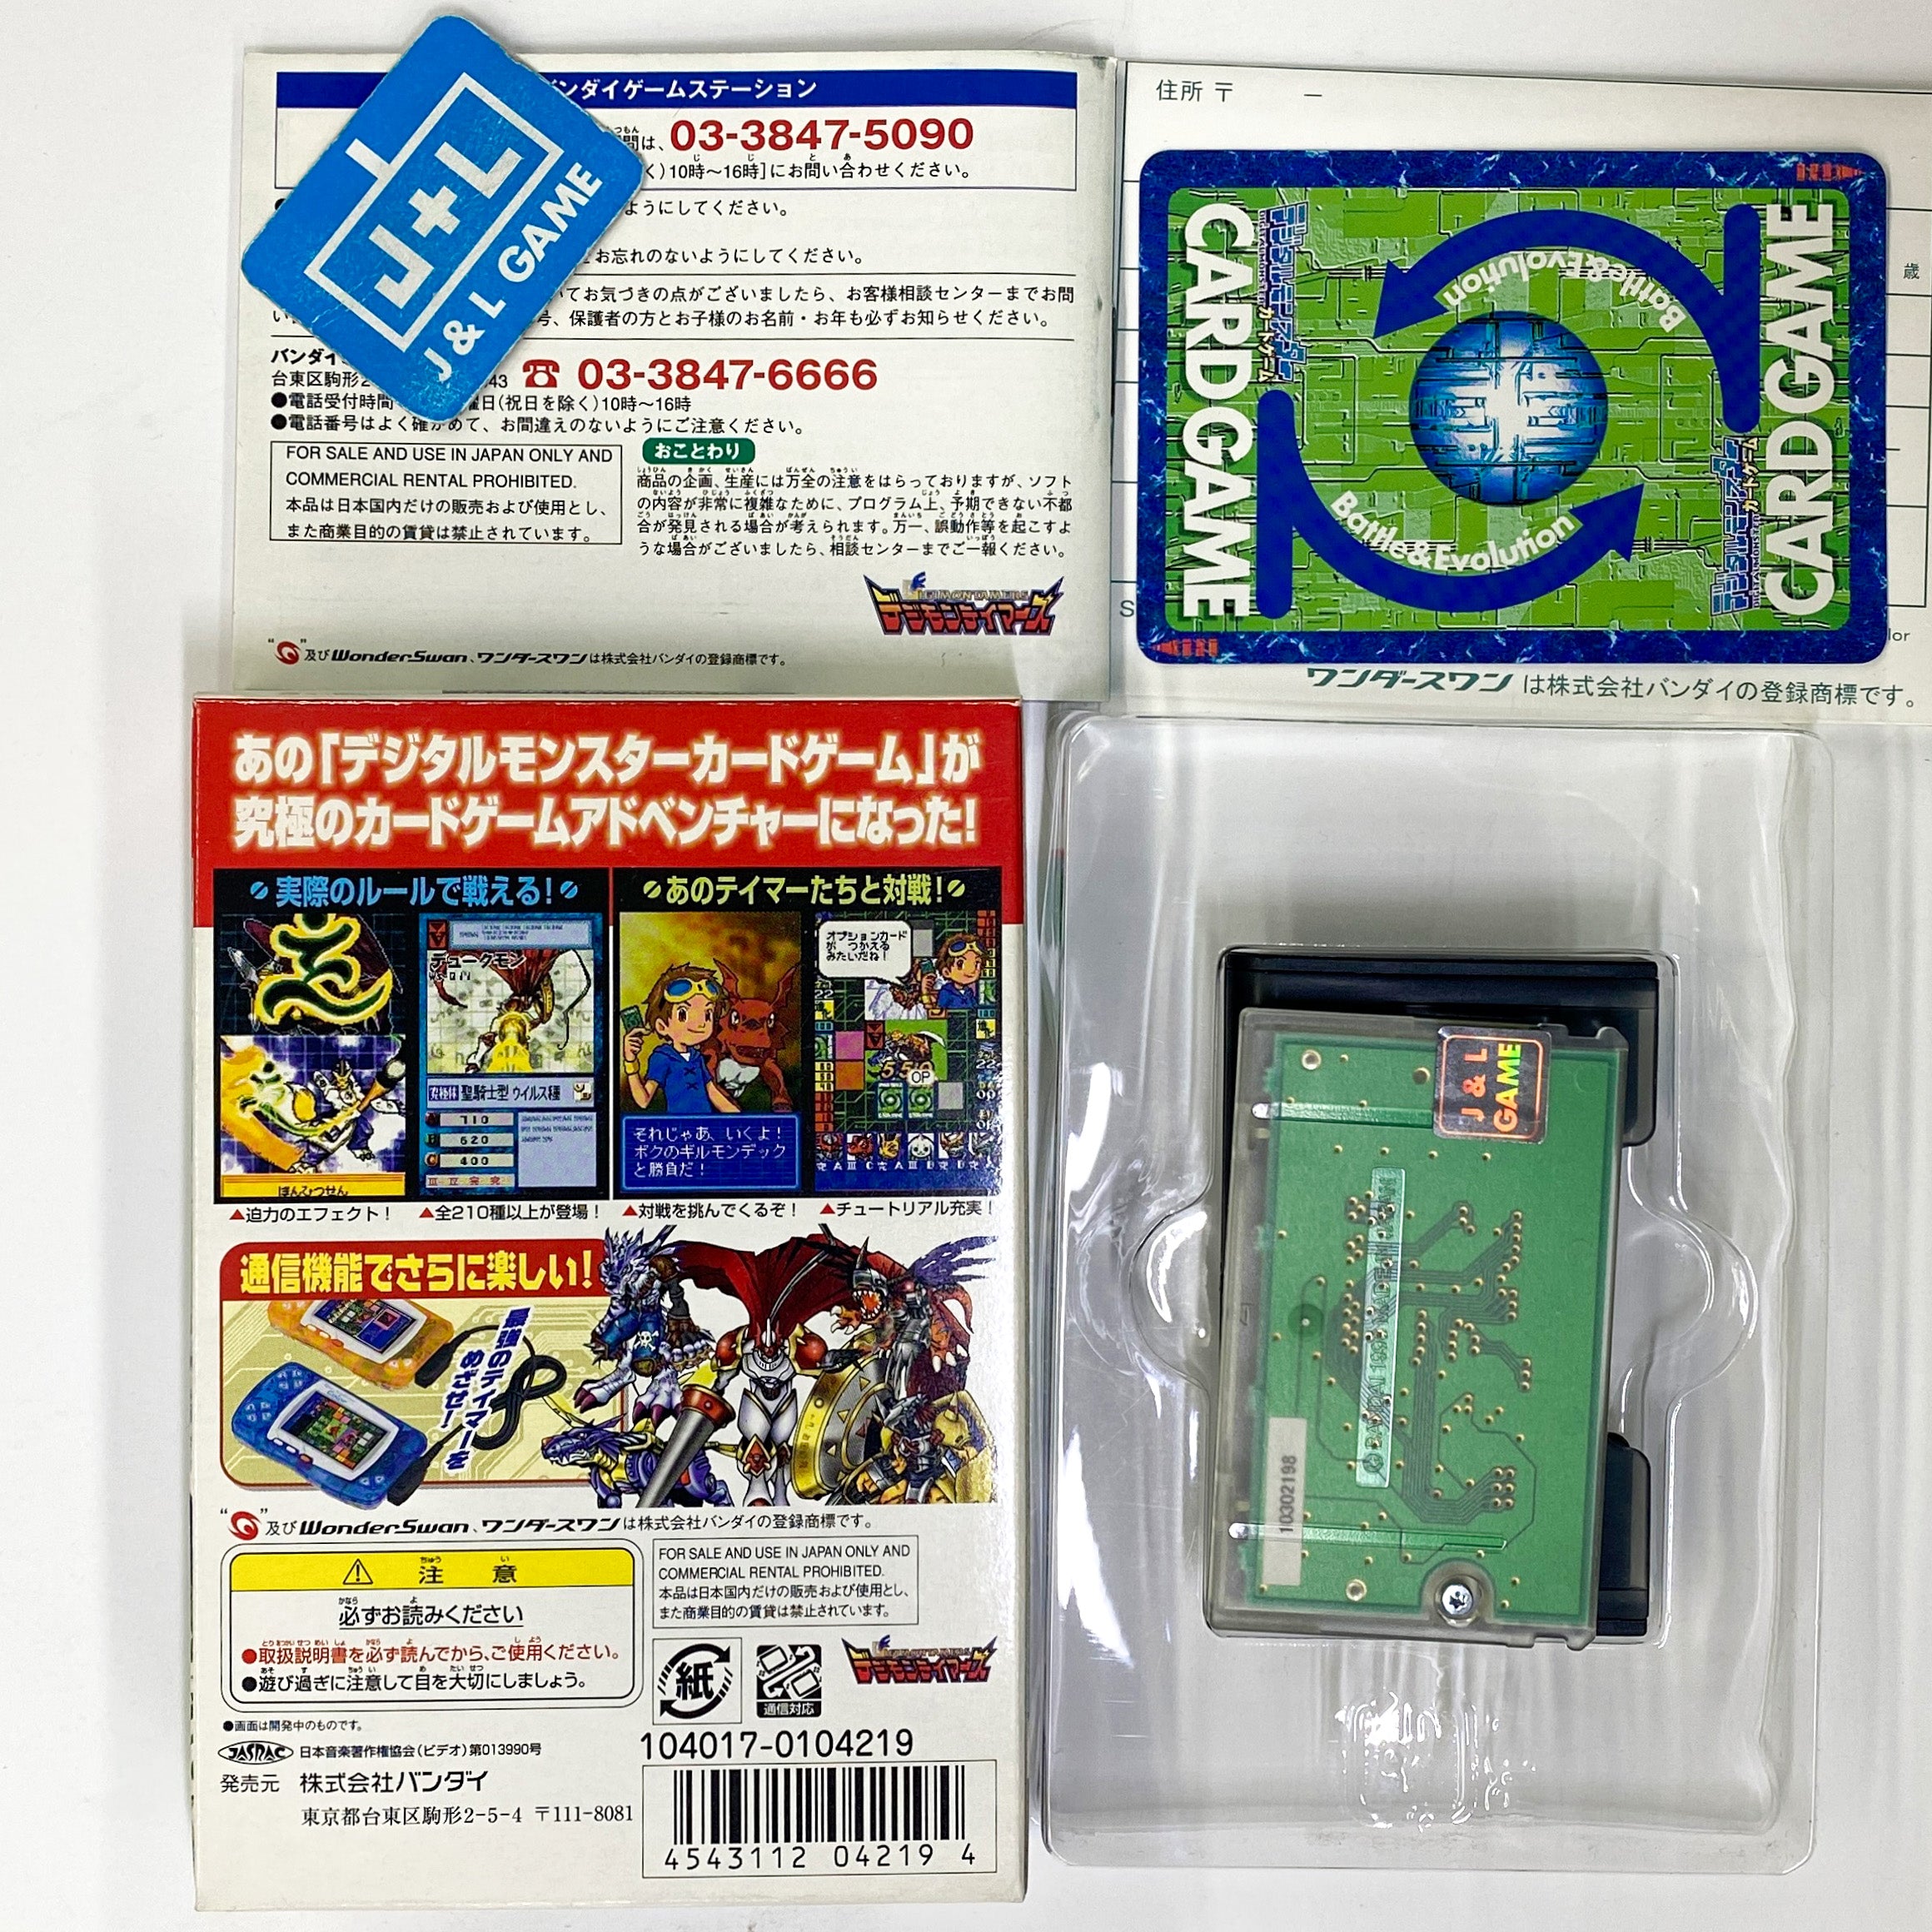 Digital Monsters Card Game Ver. WonderSwan Color - (WSC) Wonderswan Color [Pre-Owned] (Japanese Import) Video Games Bandai   